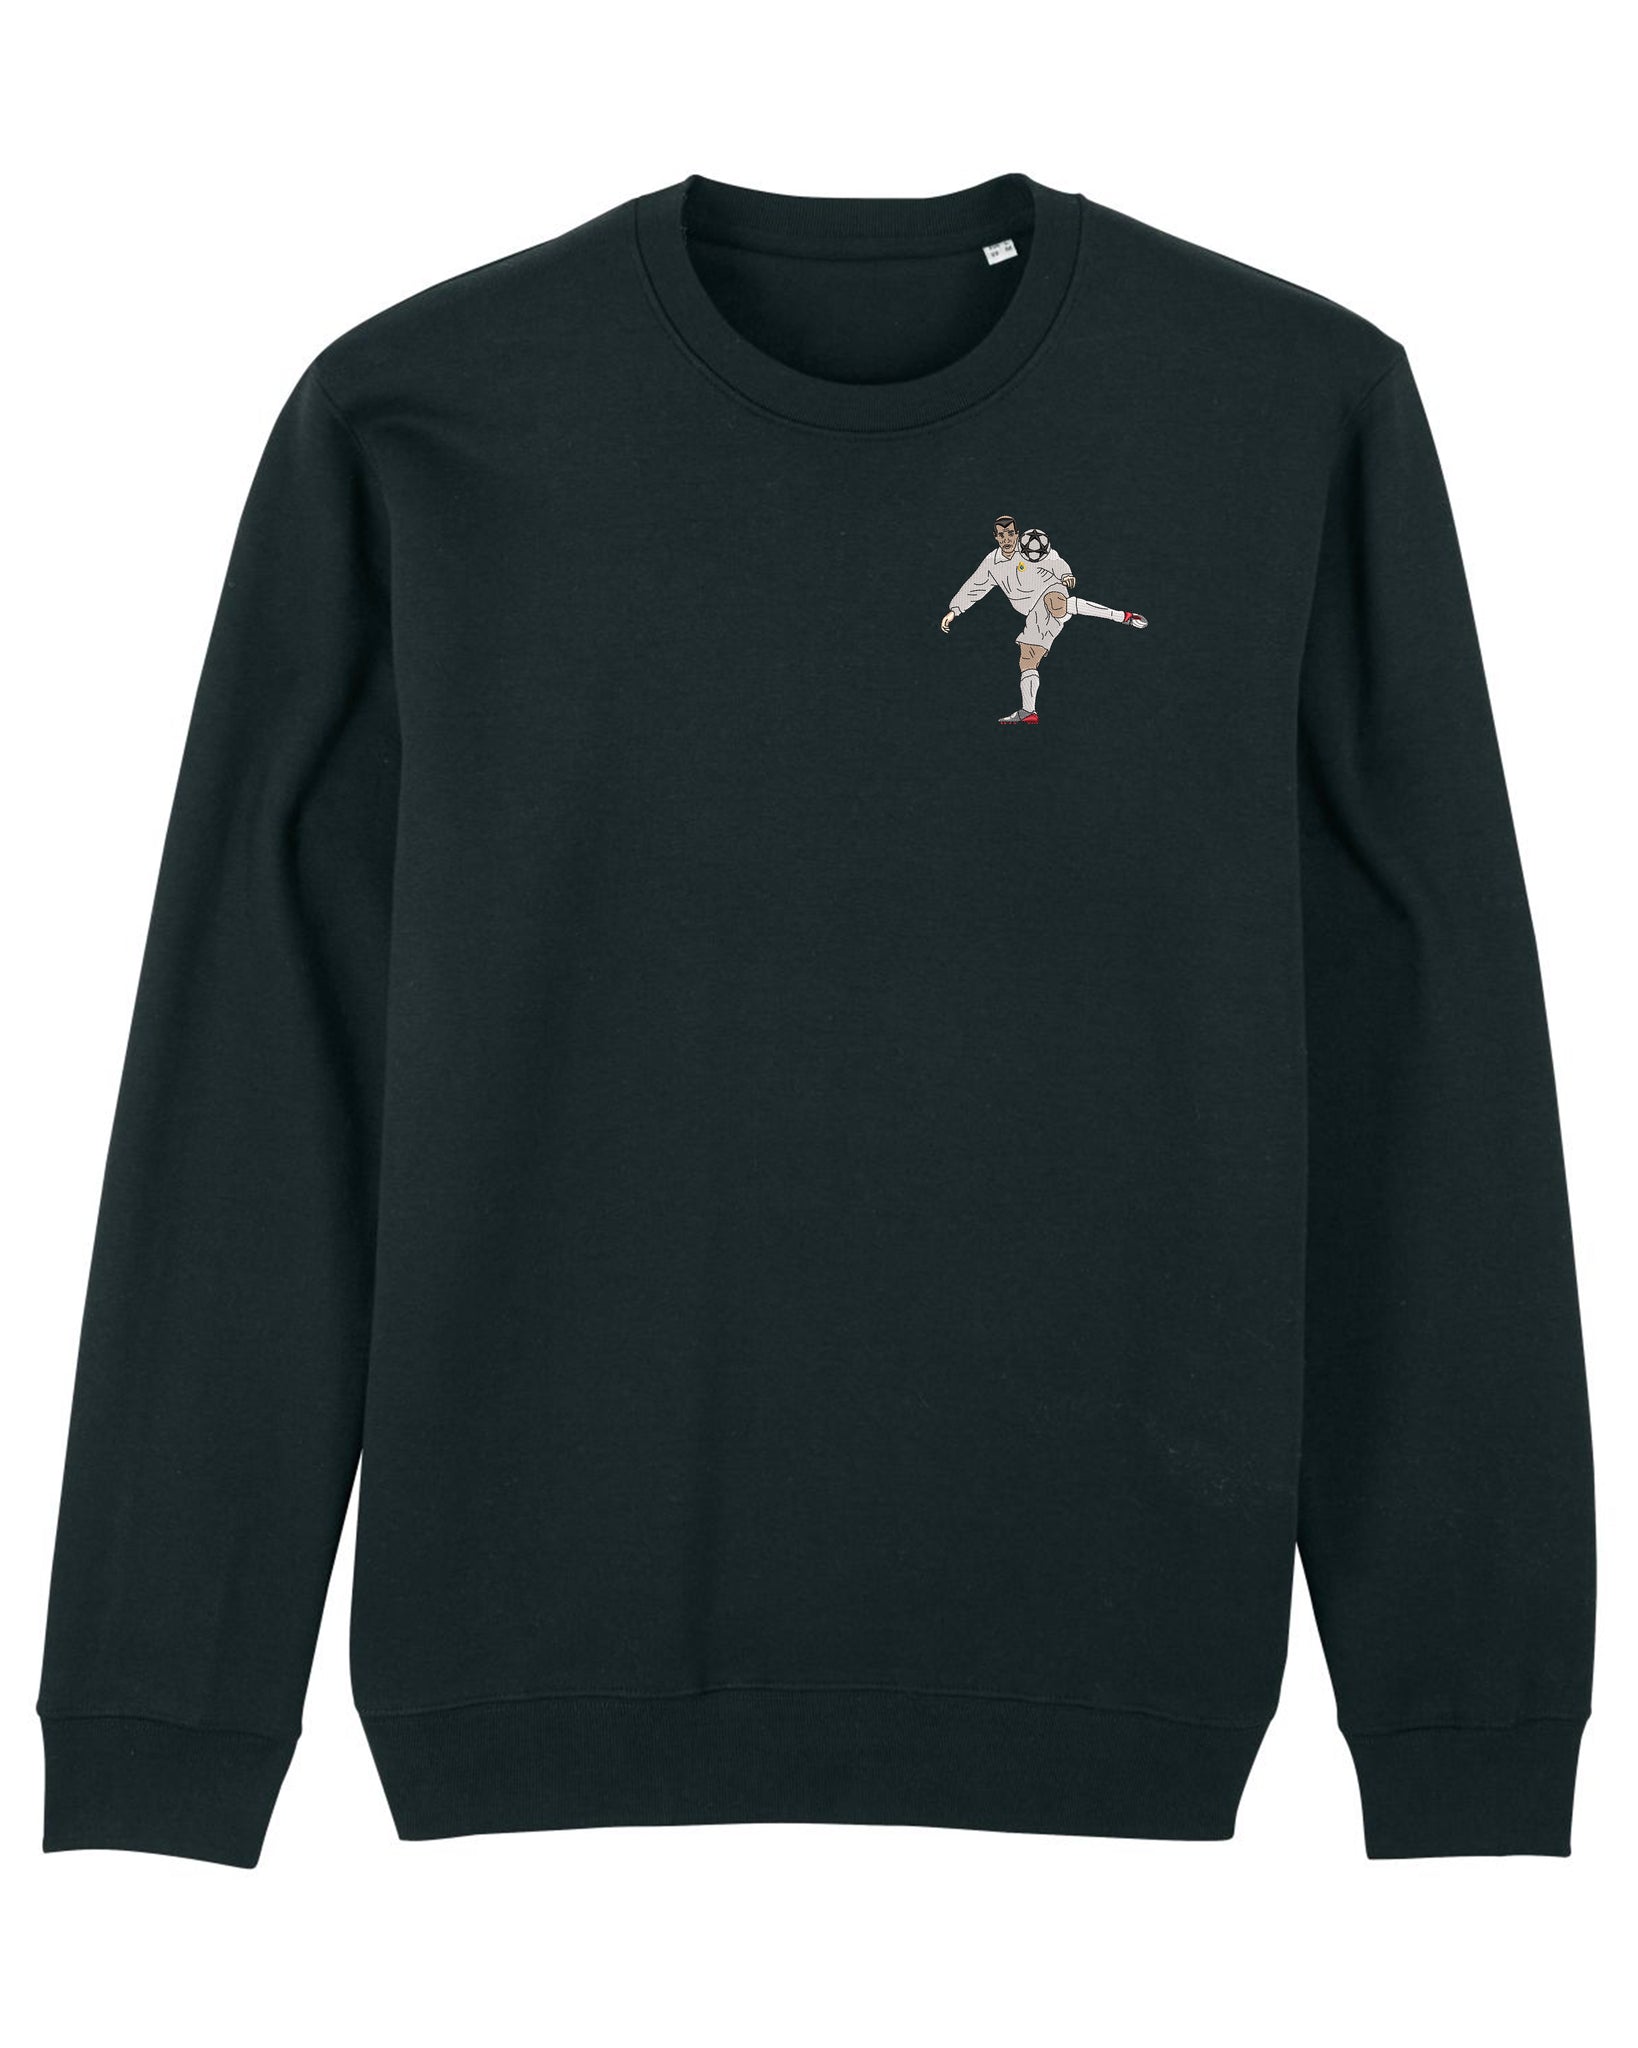 Zizou Madrid embroidered sweatshirt